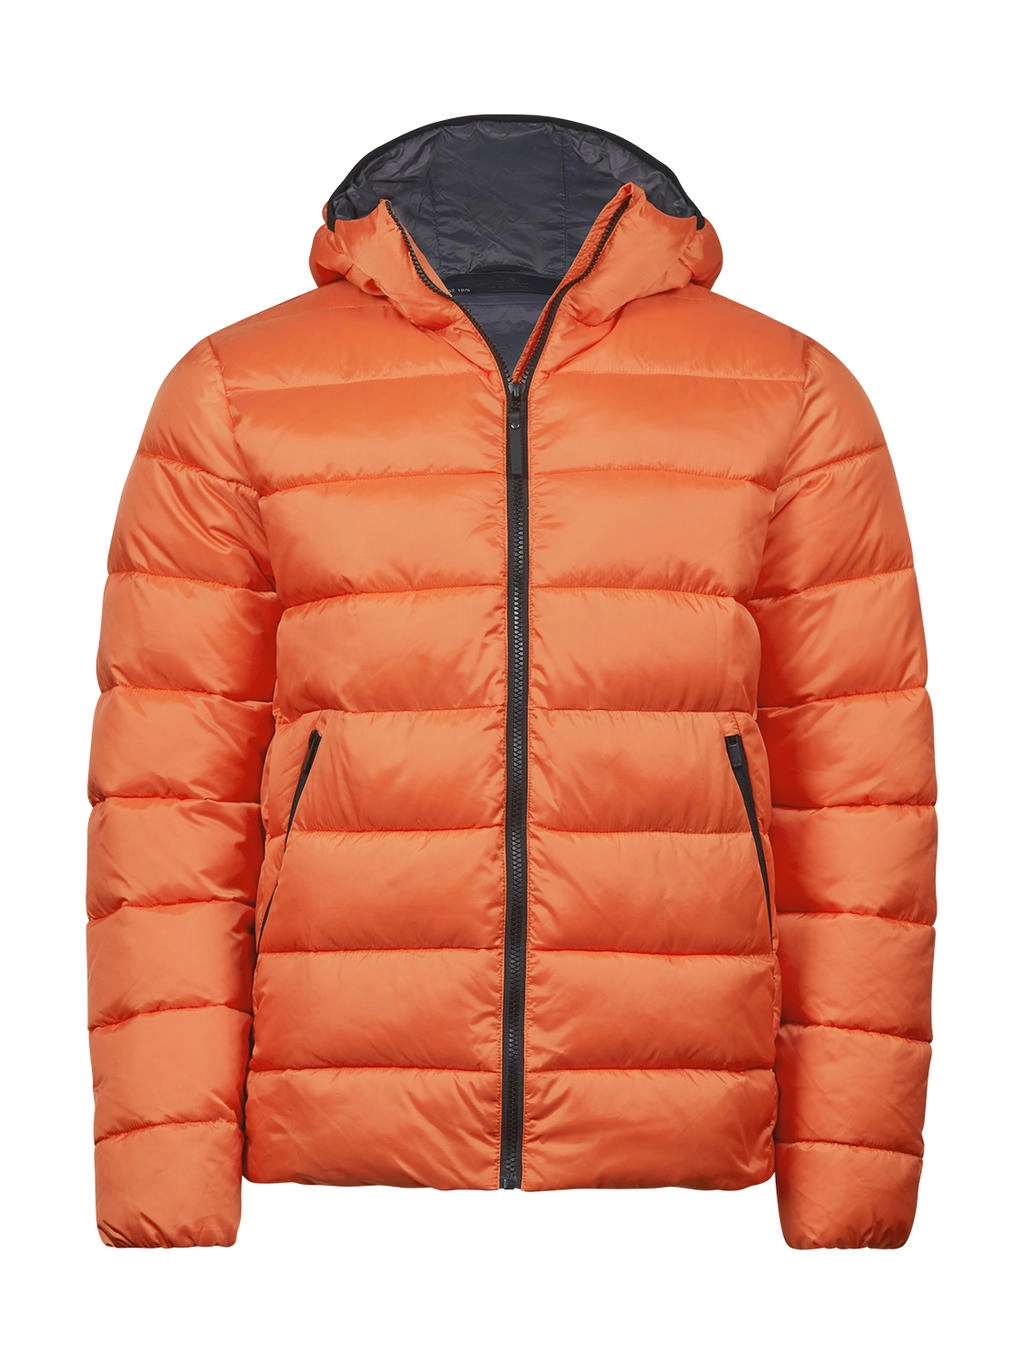 Lite Hooded Jacket zum Besticken und Bedrucken in der Farbe Dusty Orange mit Ihren Logo, Schriftzug oder Motiv.